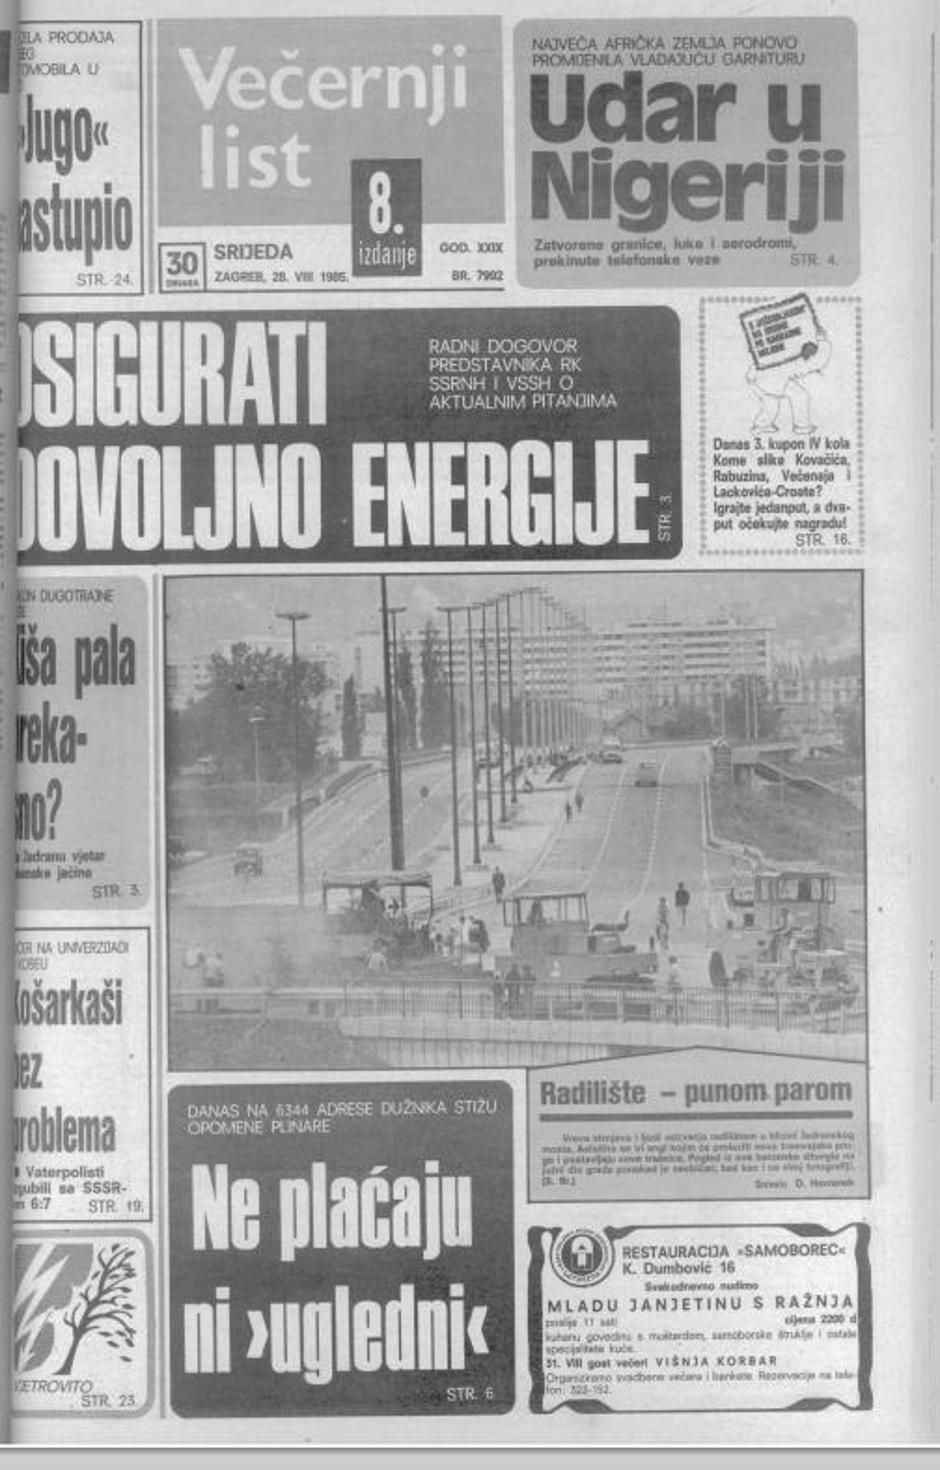 radovi pruga novi zagreb kolovoza 1985.